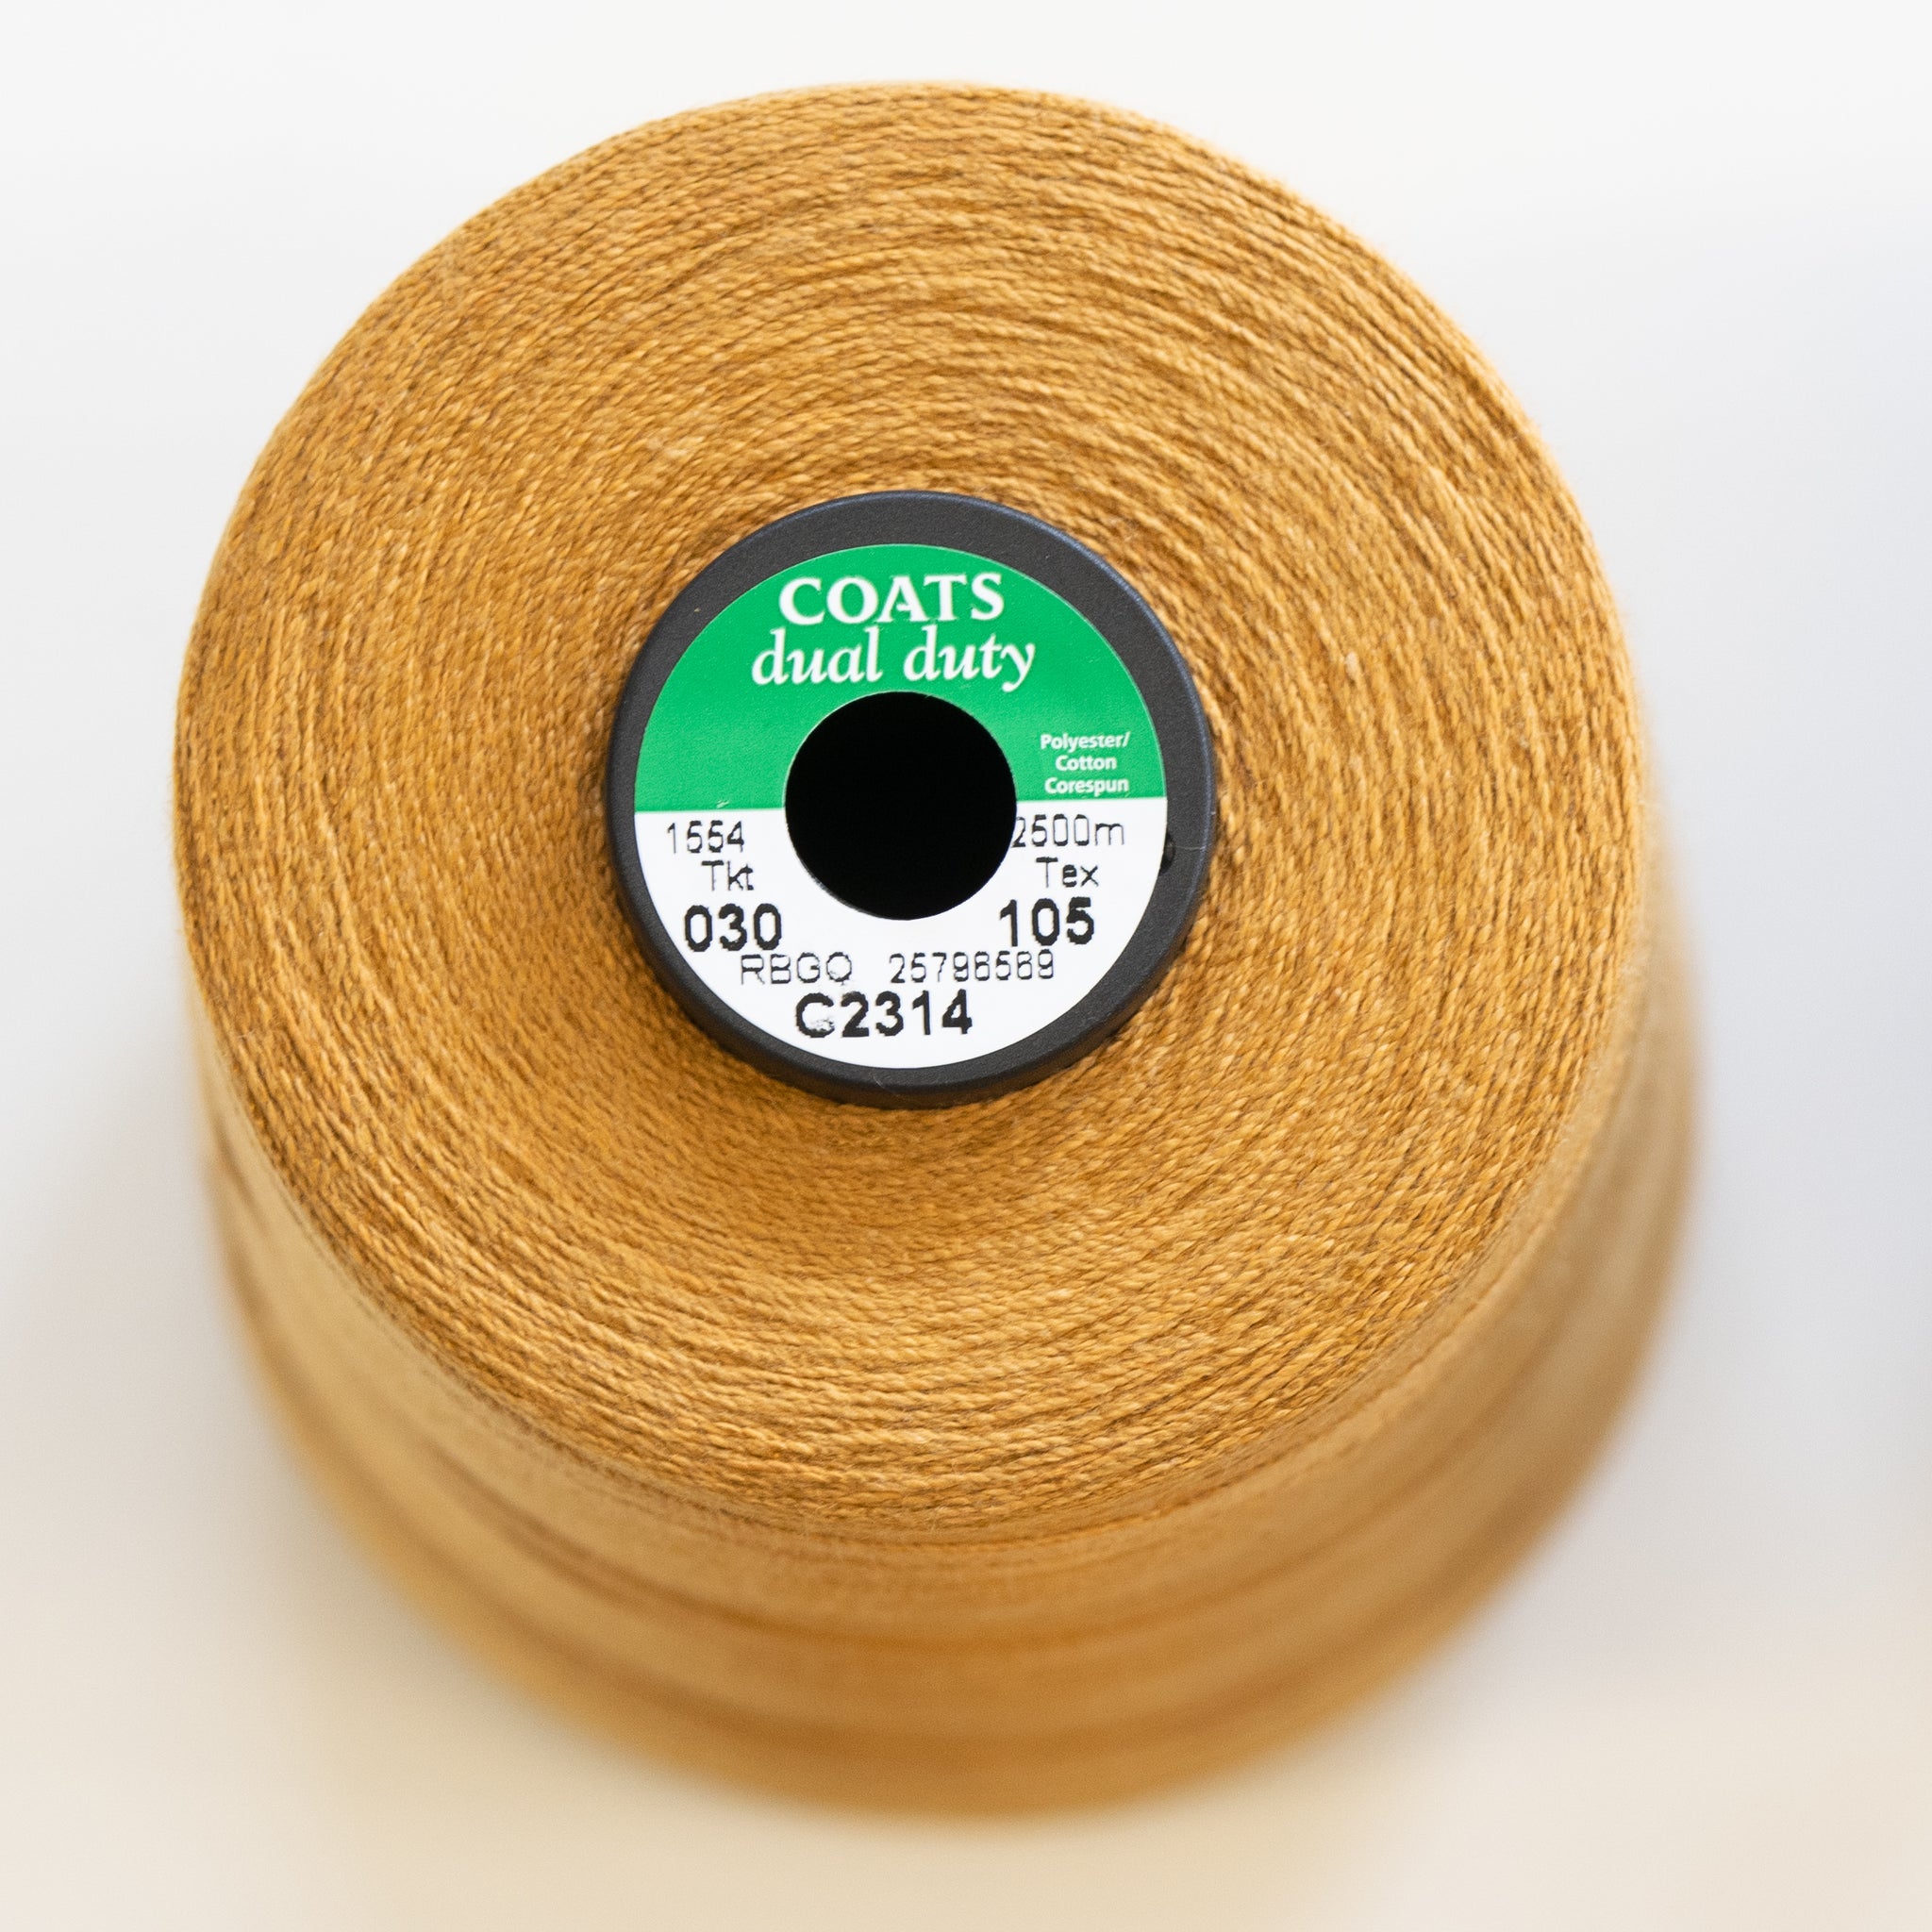 sewing thread coats dual duty  - tex105 - C2314